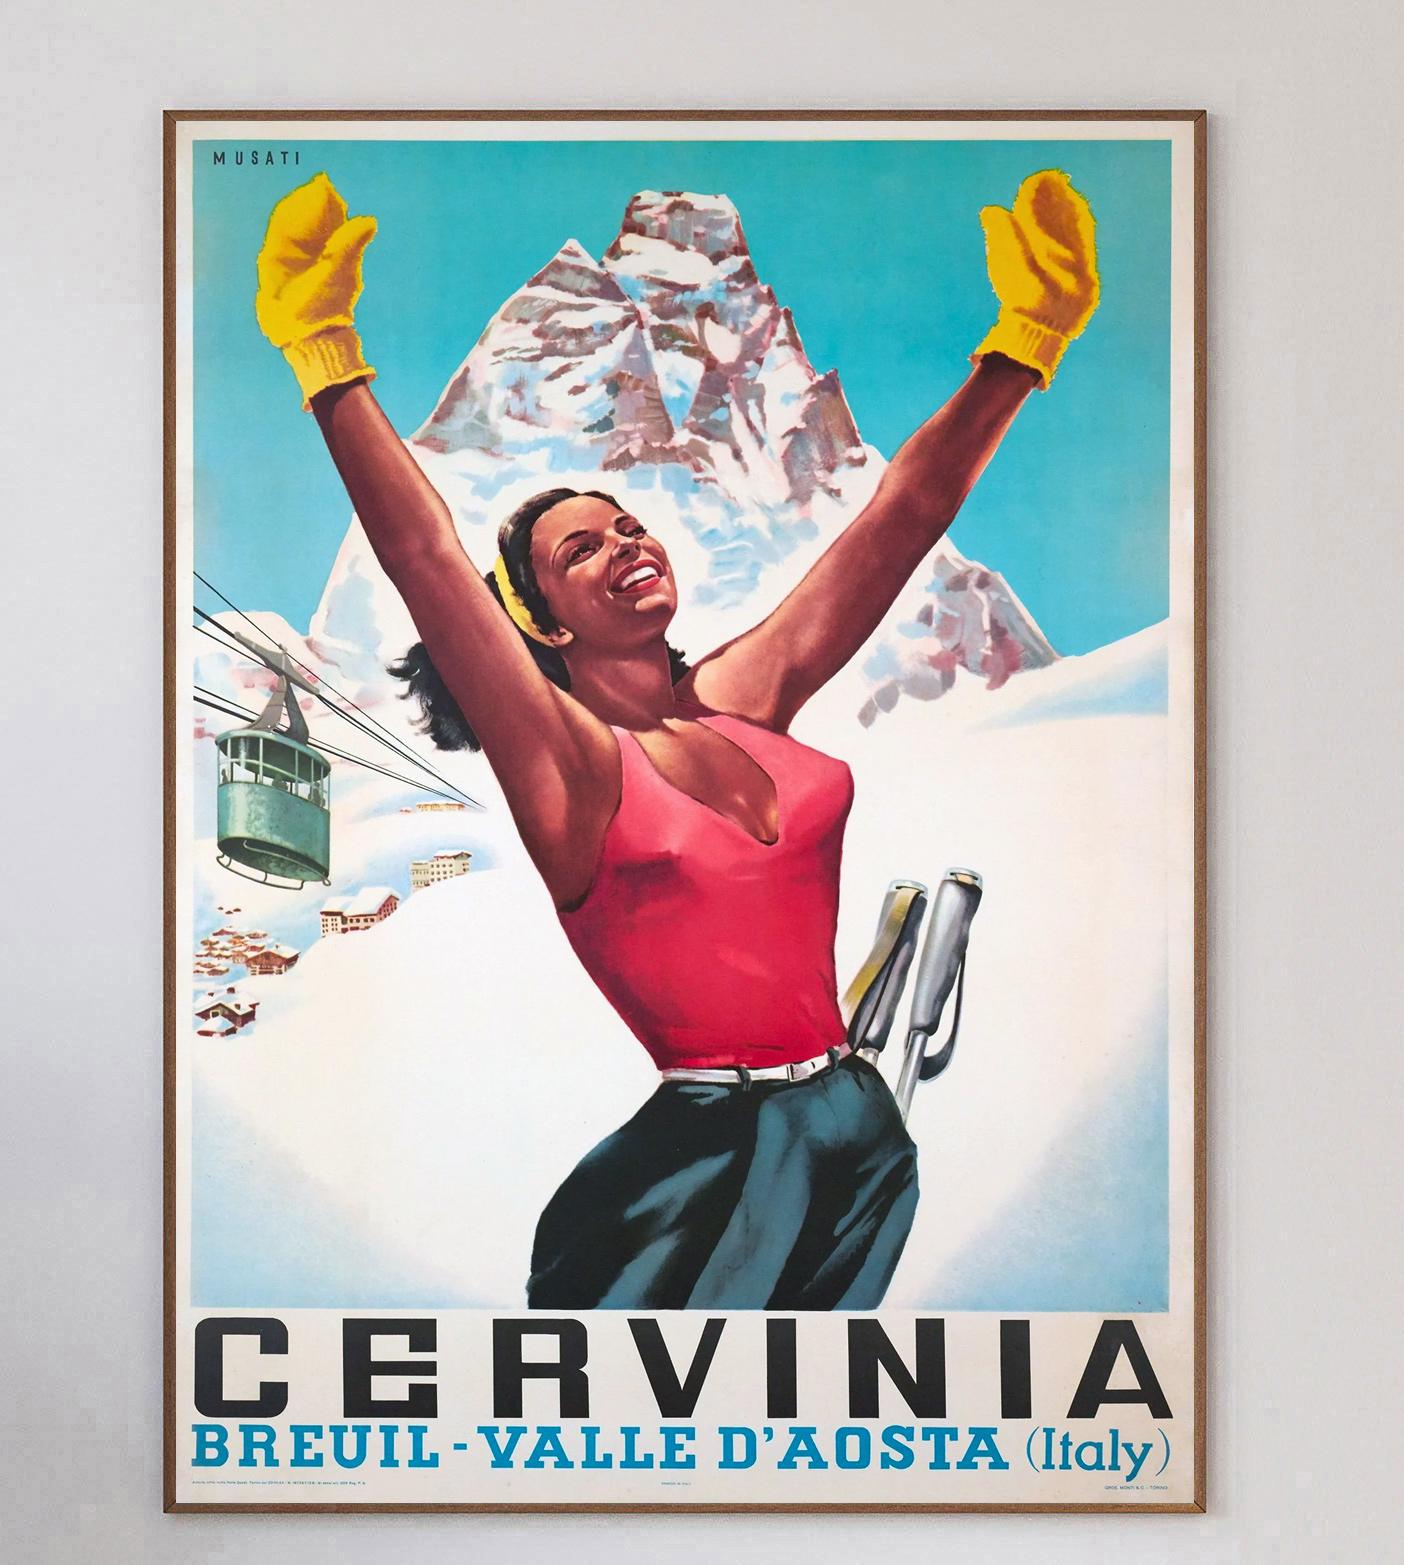 Magnifique affiche de 1953 faisant la promotion de la station de ski de Cervinia, dans la région d'Aoste, au nord-ouest de l'Italie. Cette affiche a été créée pour faire la promotion de la région auprès des touristes européens.

Avec une magnifique